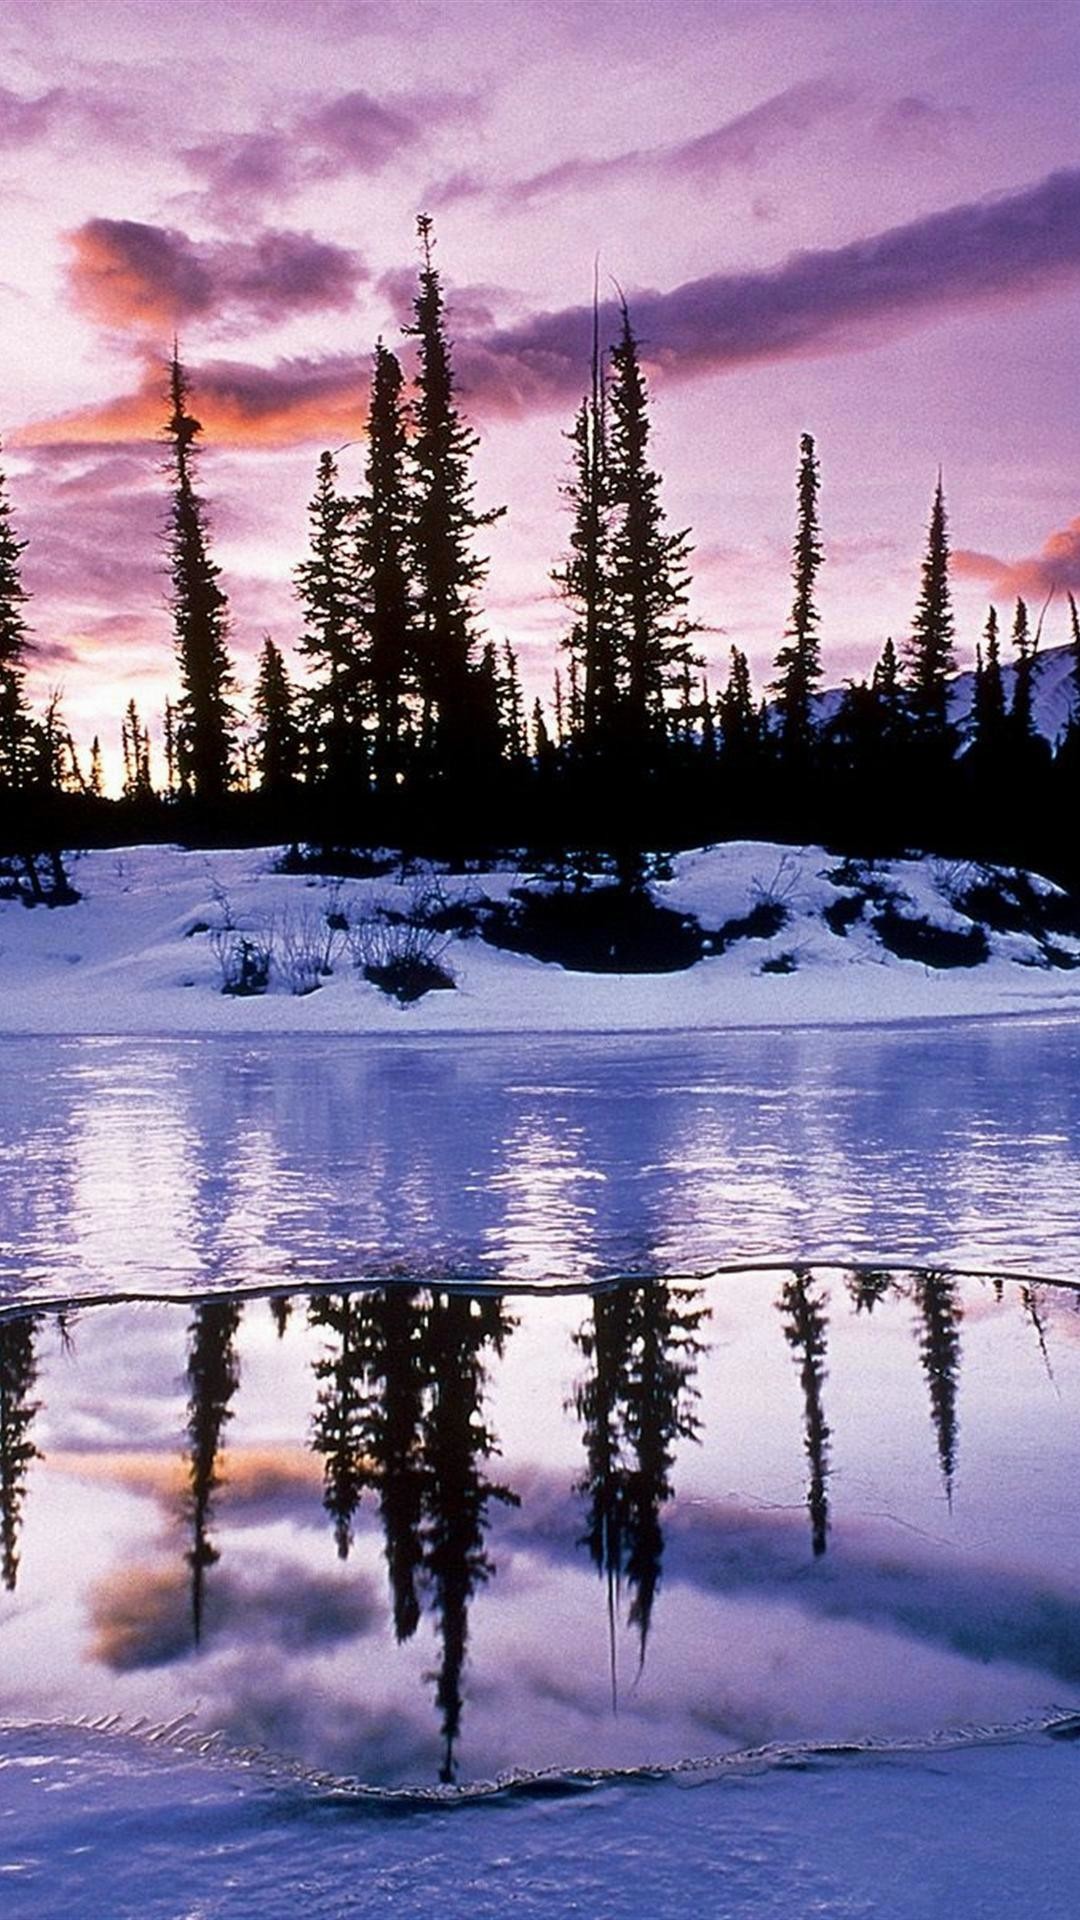 jolis fonds d'écran pour iphone 6,paysage naturel,la nature,réflexion,neige,ciel